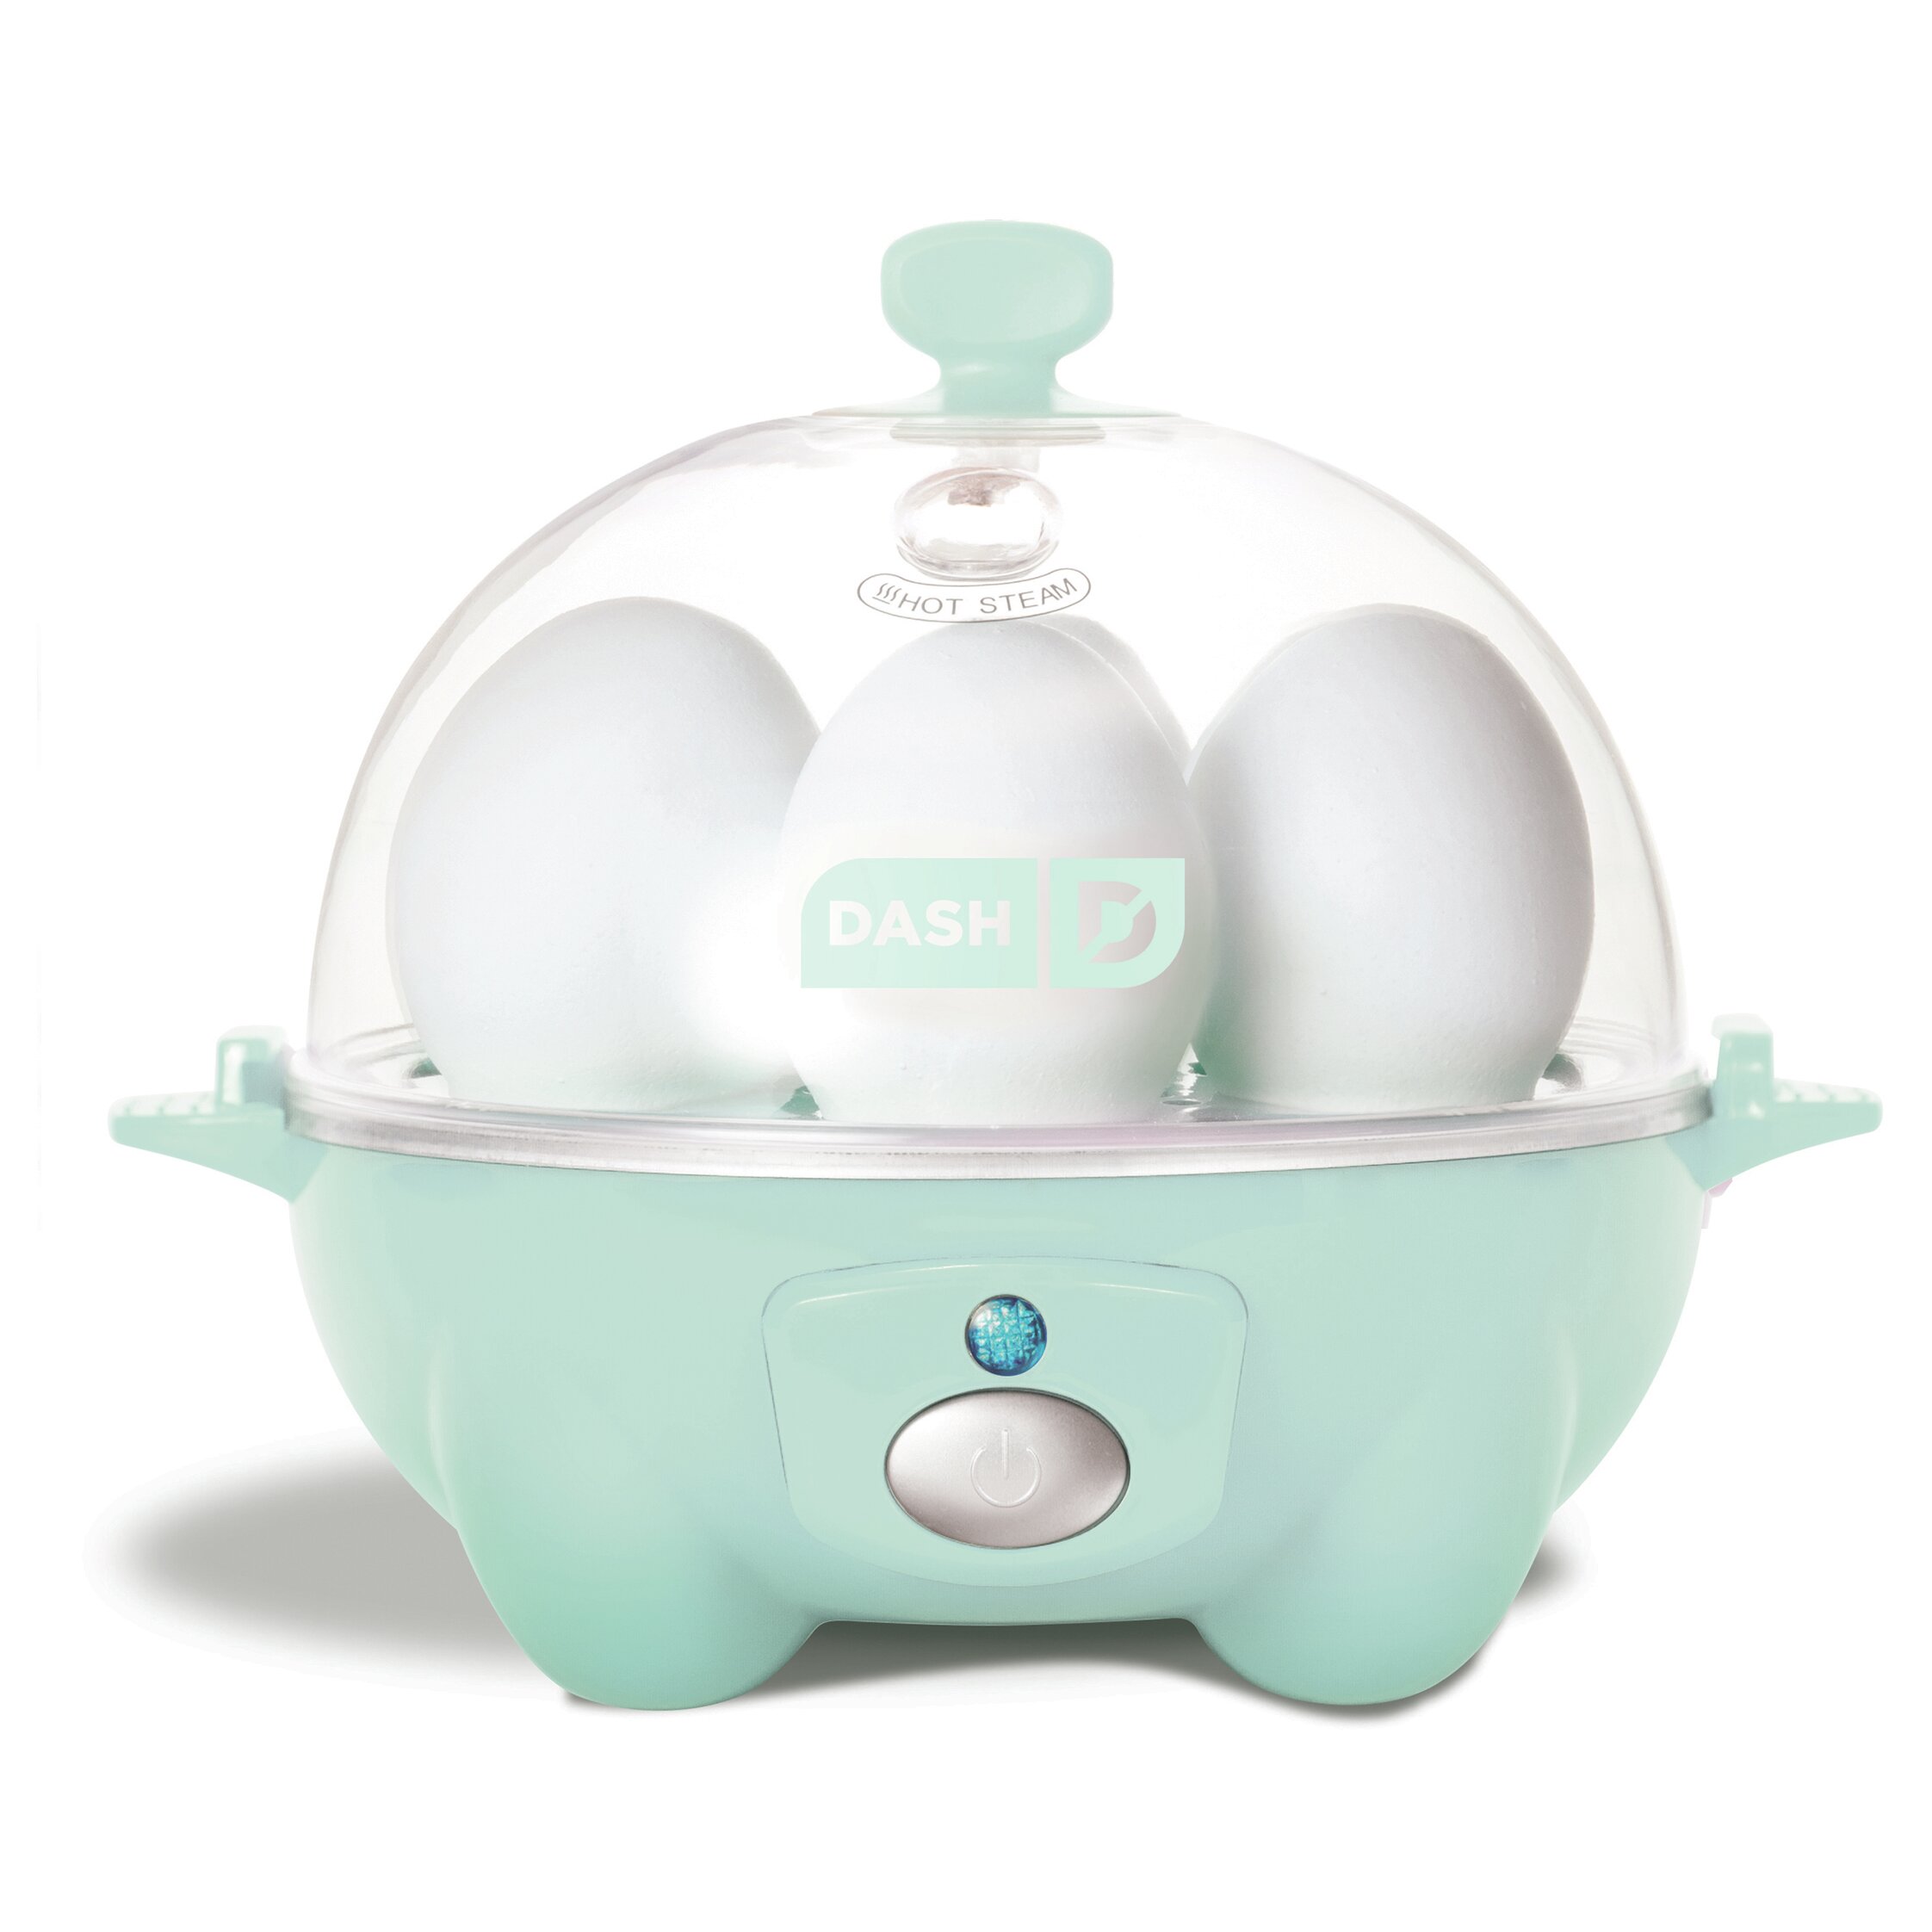 Dash rapid egg cooker моды на биткоины в майнкрафте